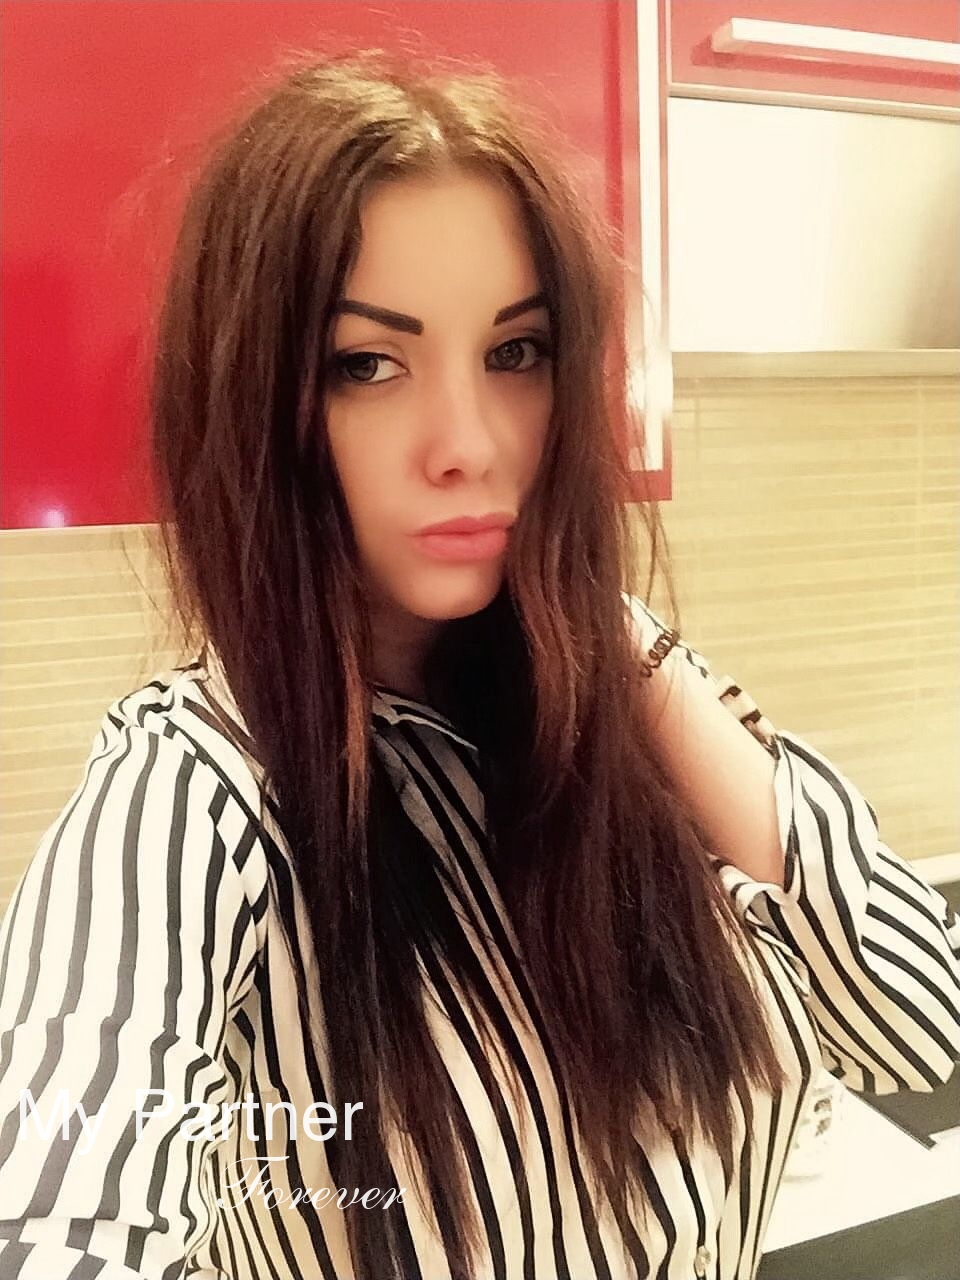 Pretty Girl from Ukraine - Irina from Vinnitsa, Ukraine